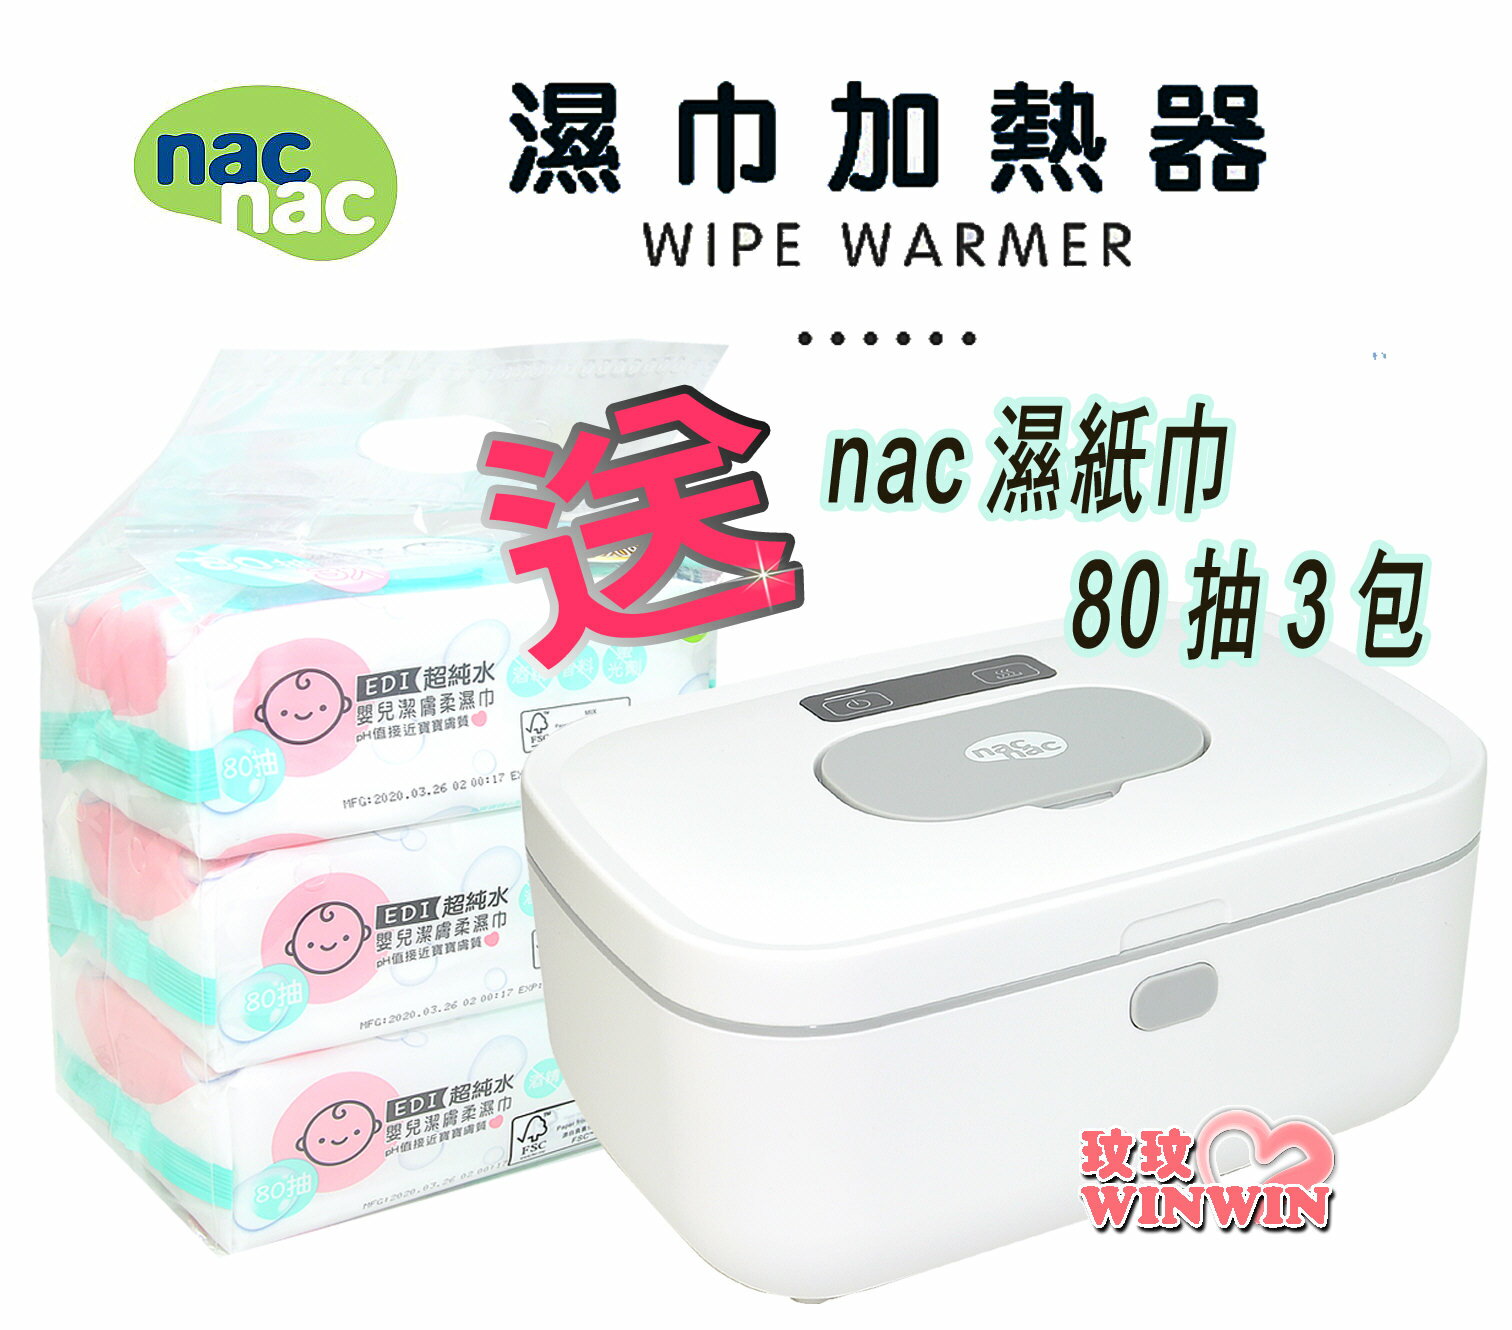 nac nac 嬰兒濕紙巾加熱器 TBW-01，拒絕冰冷，給寶寶有溫度的接觸